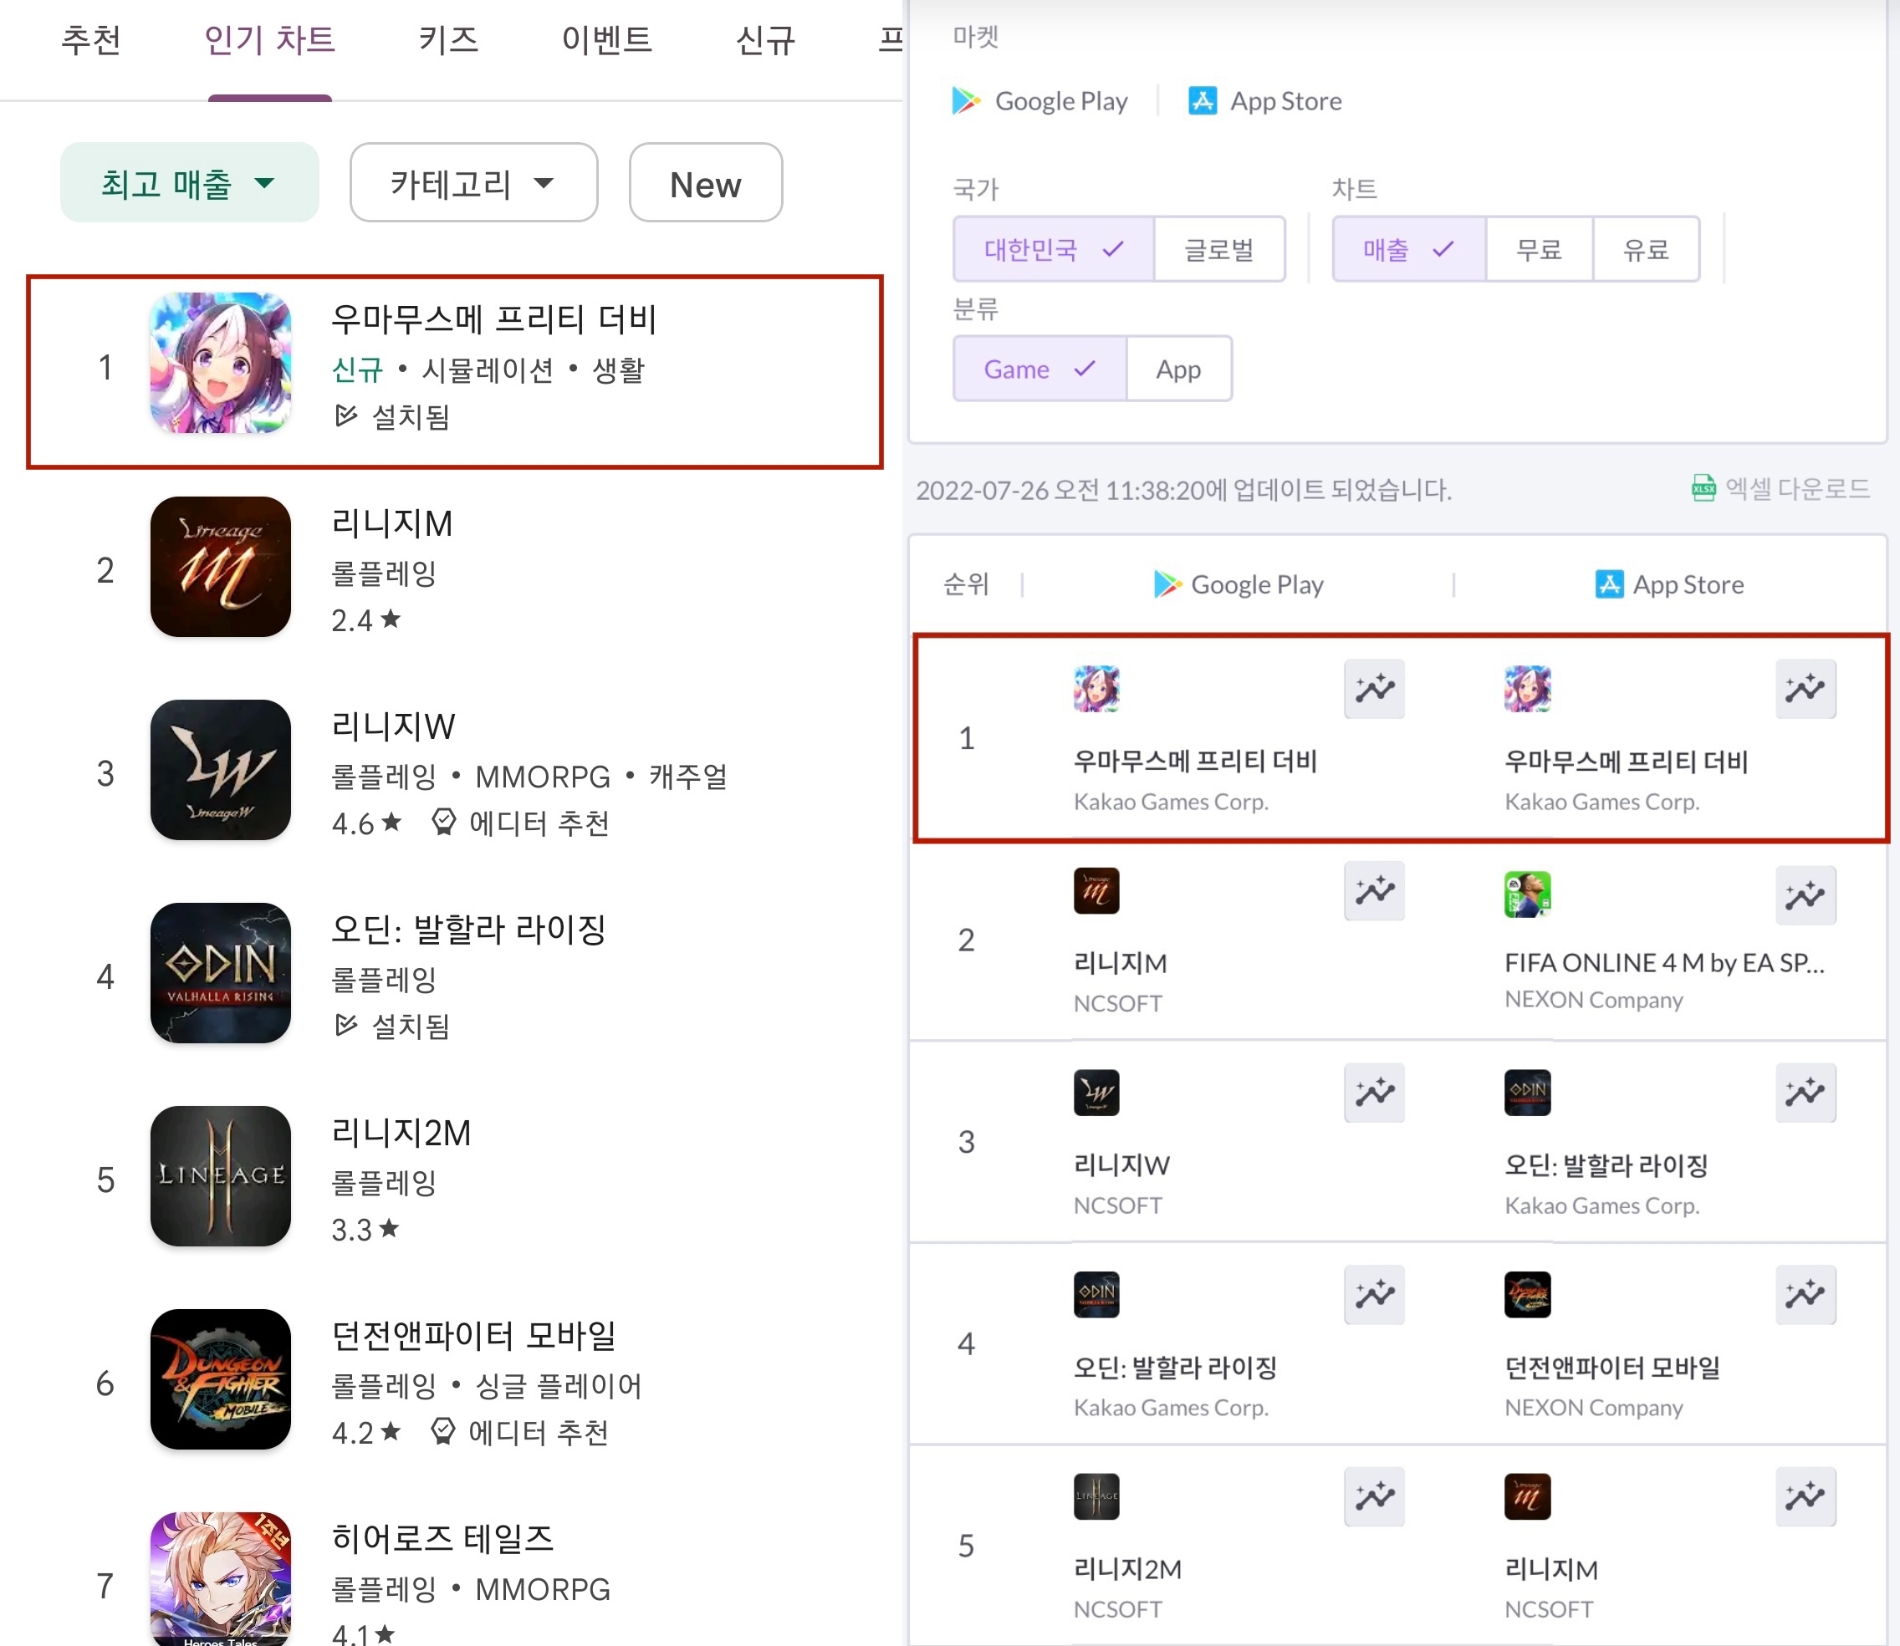 26일 기준 구글플레이 및 애플앱스토어 모바일 게임 매출 순위. 